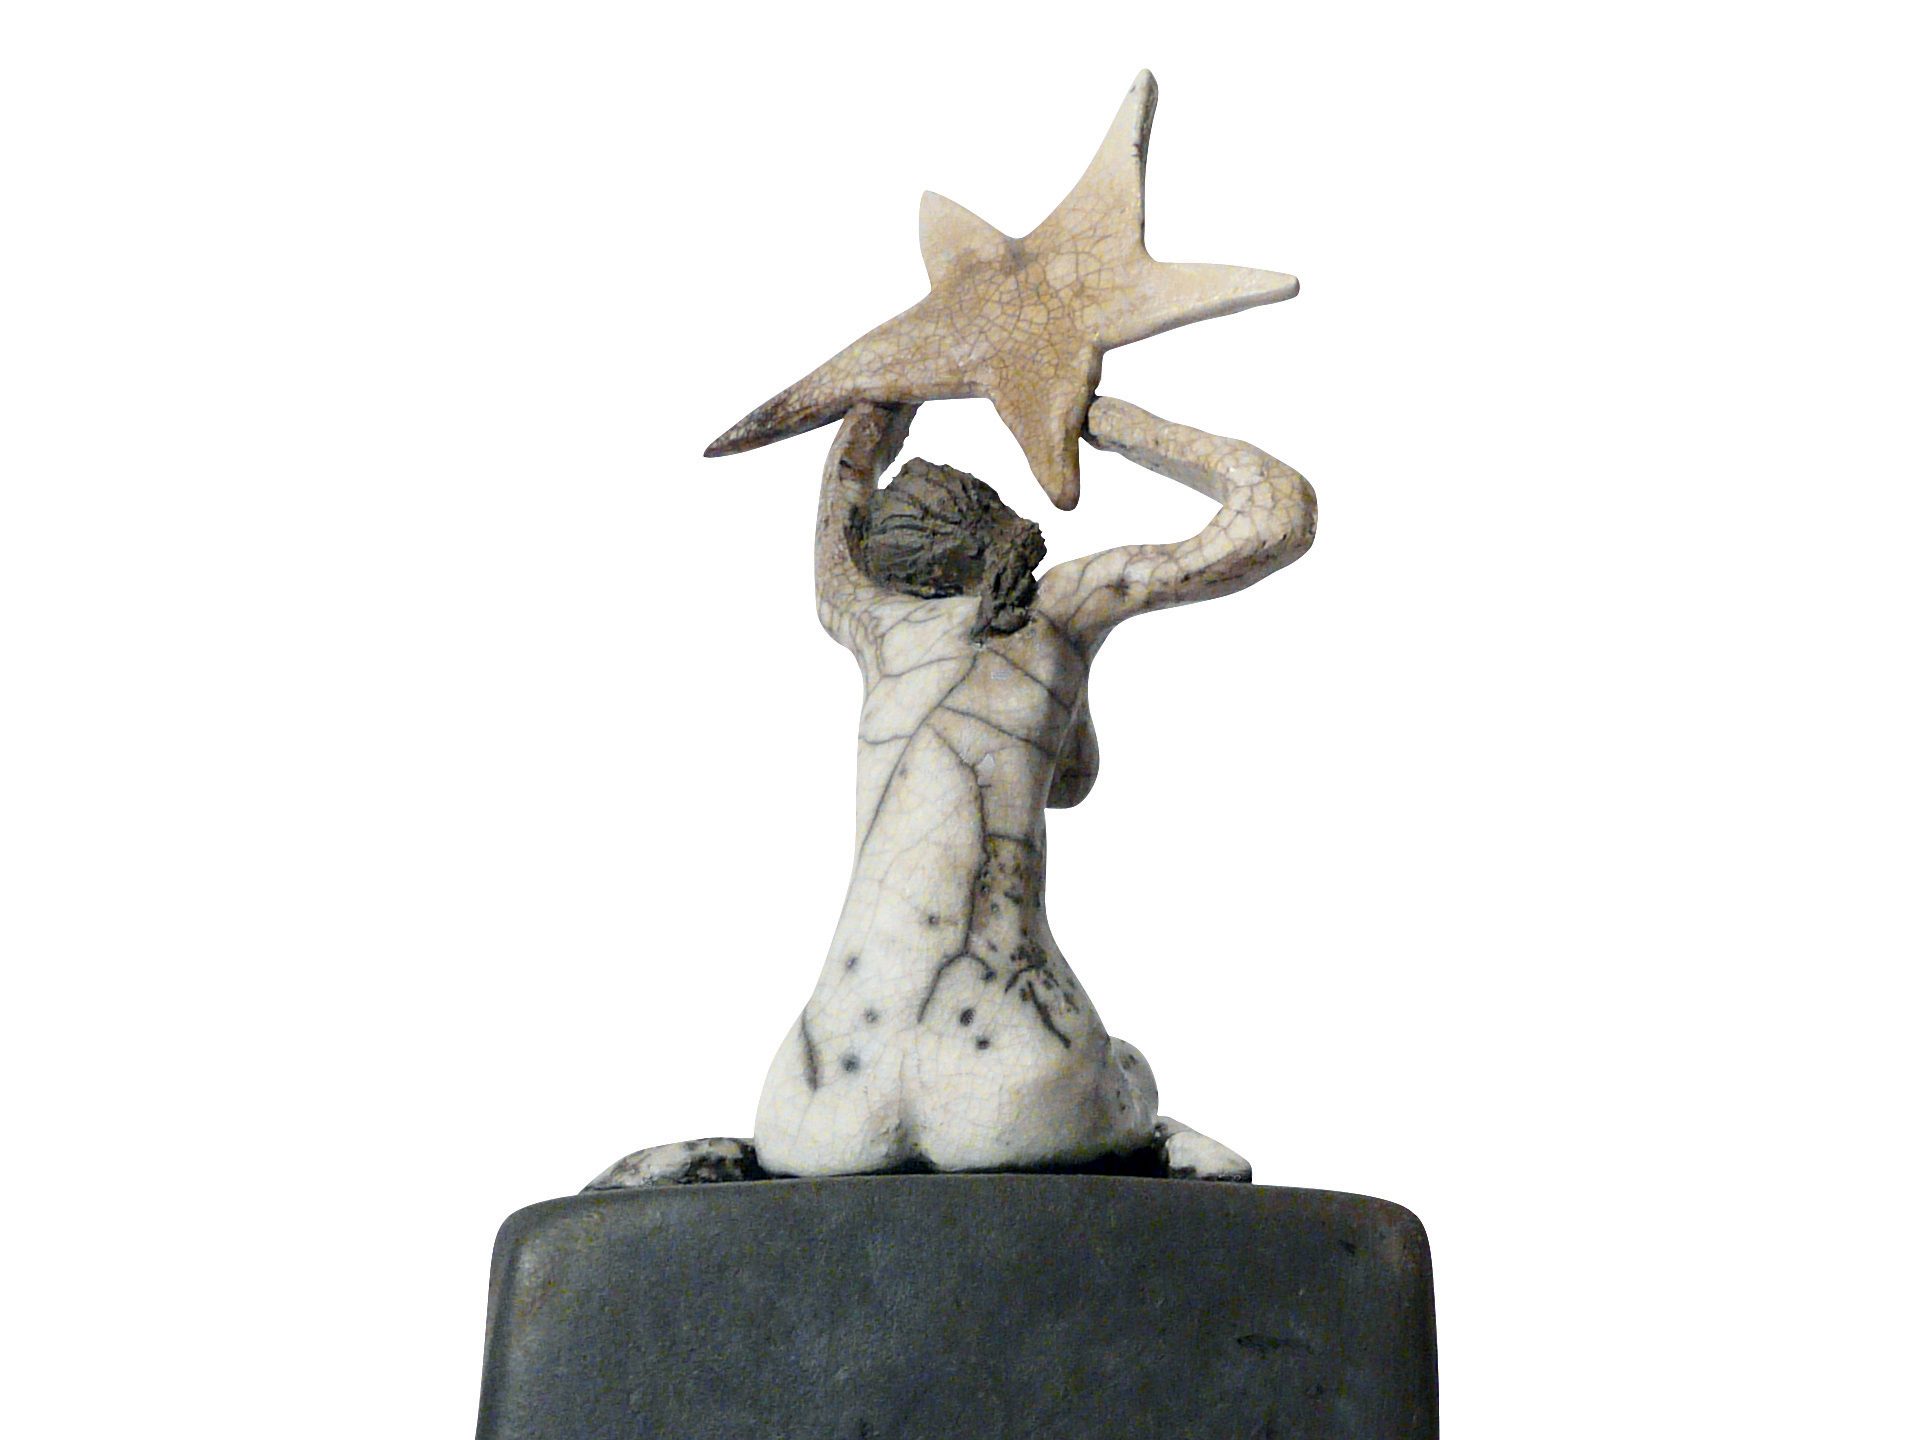 La décrocheuse d’étoiles - Grès - Raku - Sculptures céramique de Florence Lemiegre